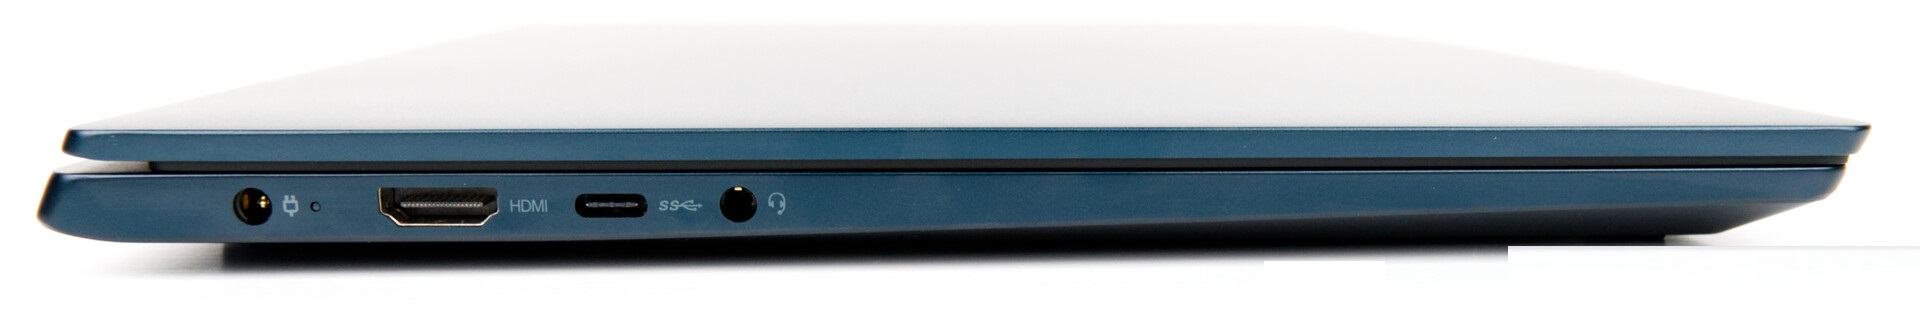 Lenovo IdeaPad S540